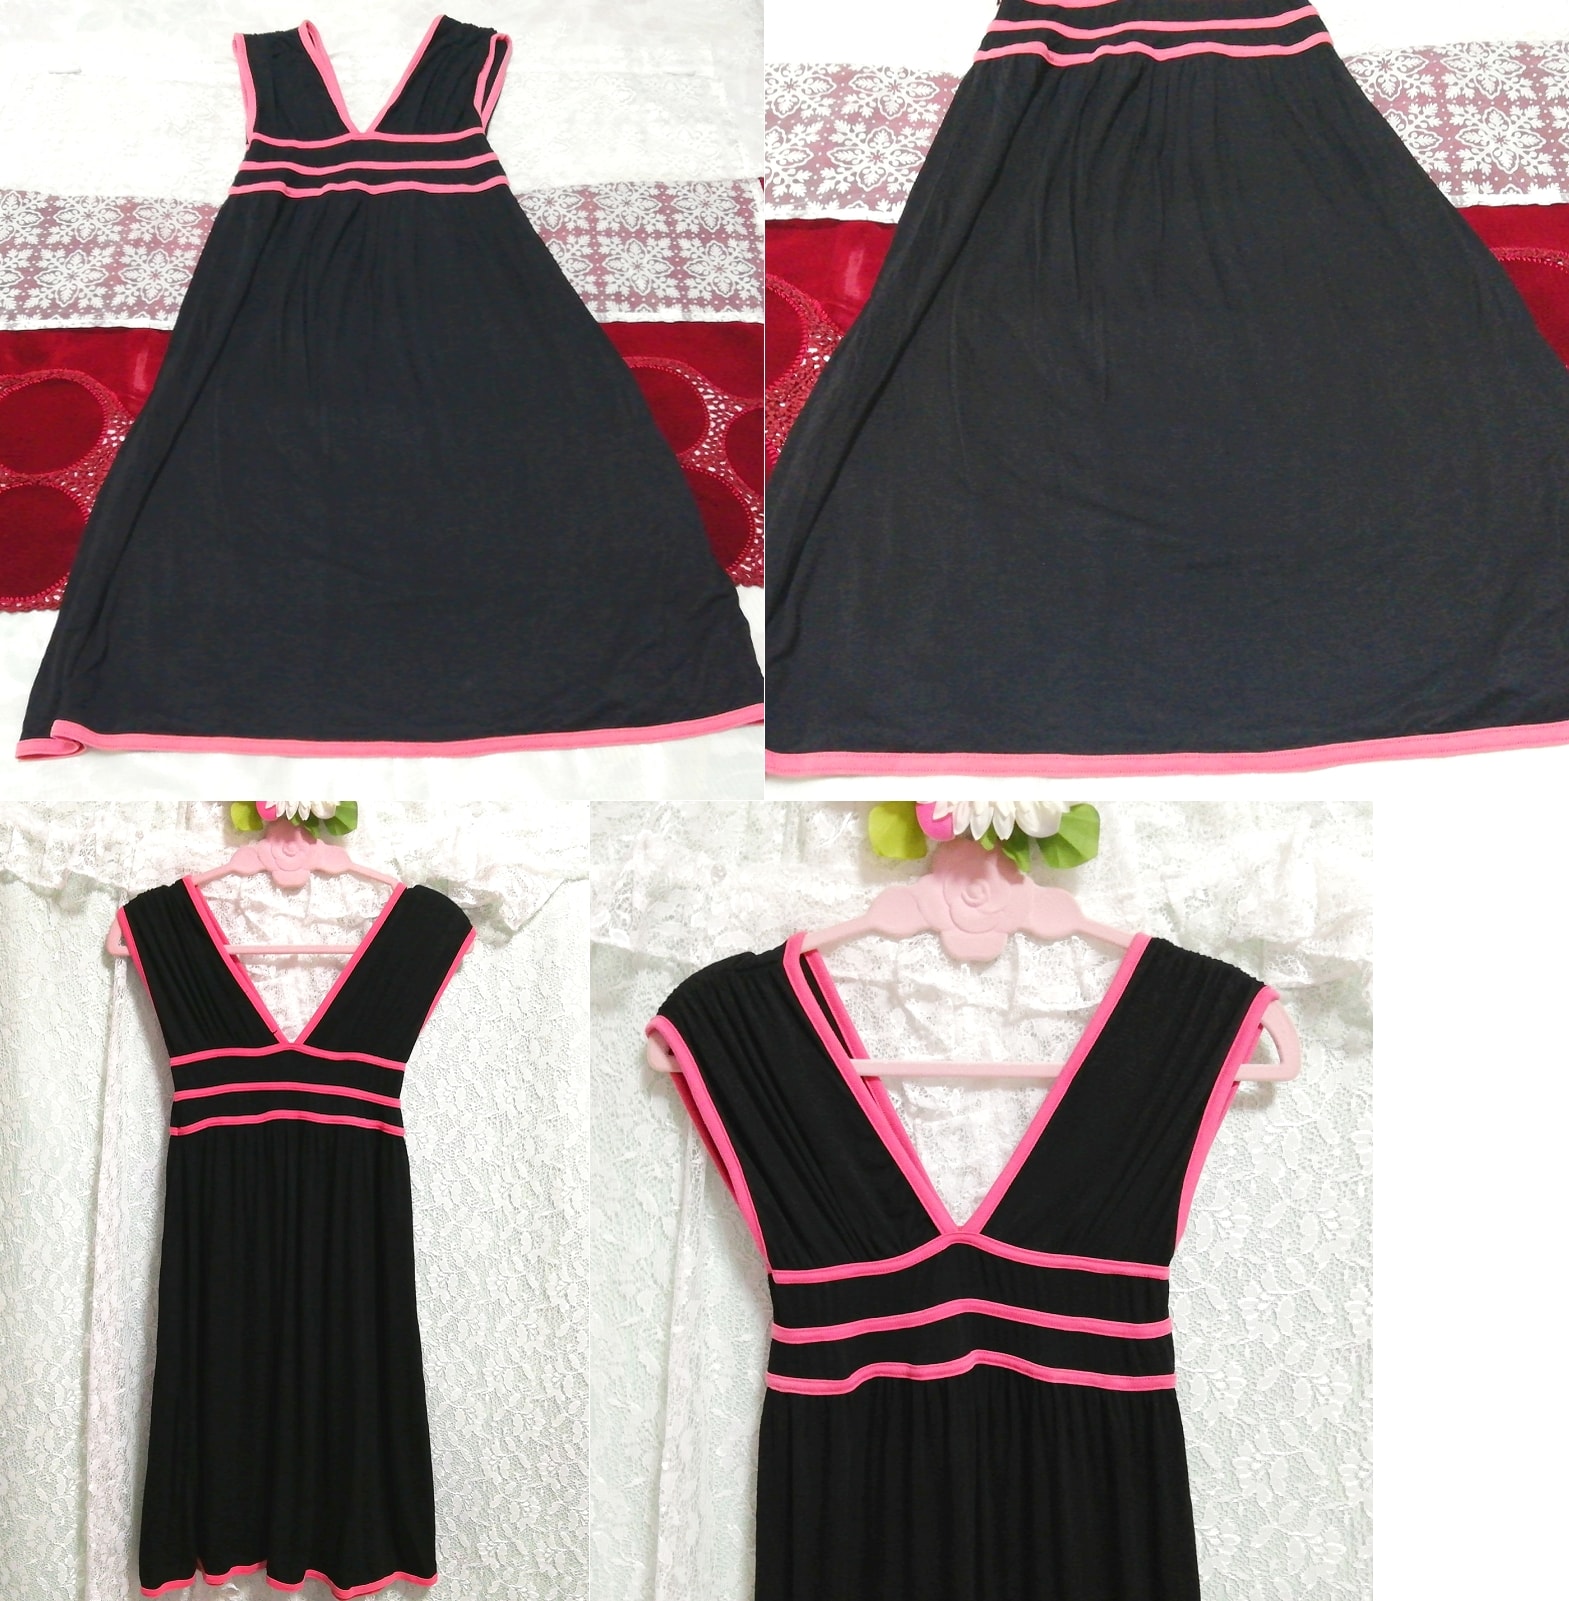 Camisón camisón negligee sin mangas rosa negro medio vestido, falda hasta la rodilla, talla m